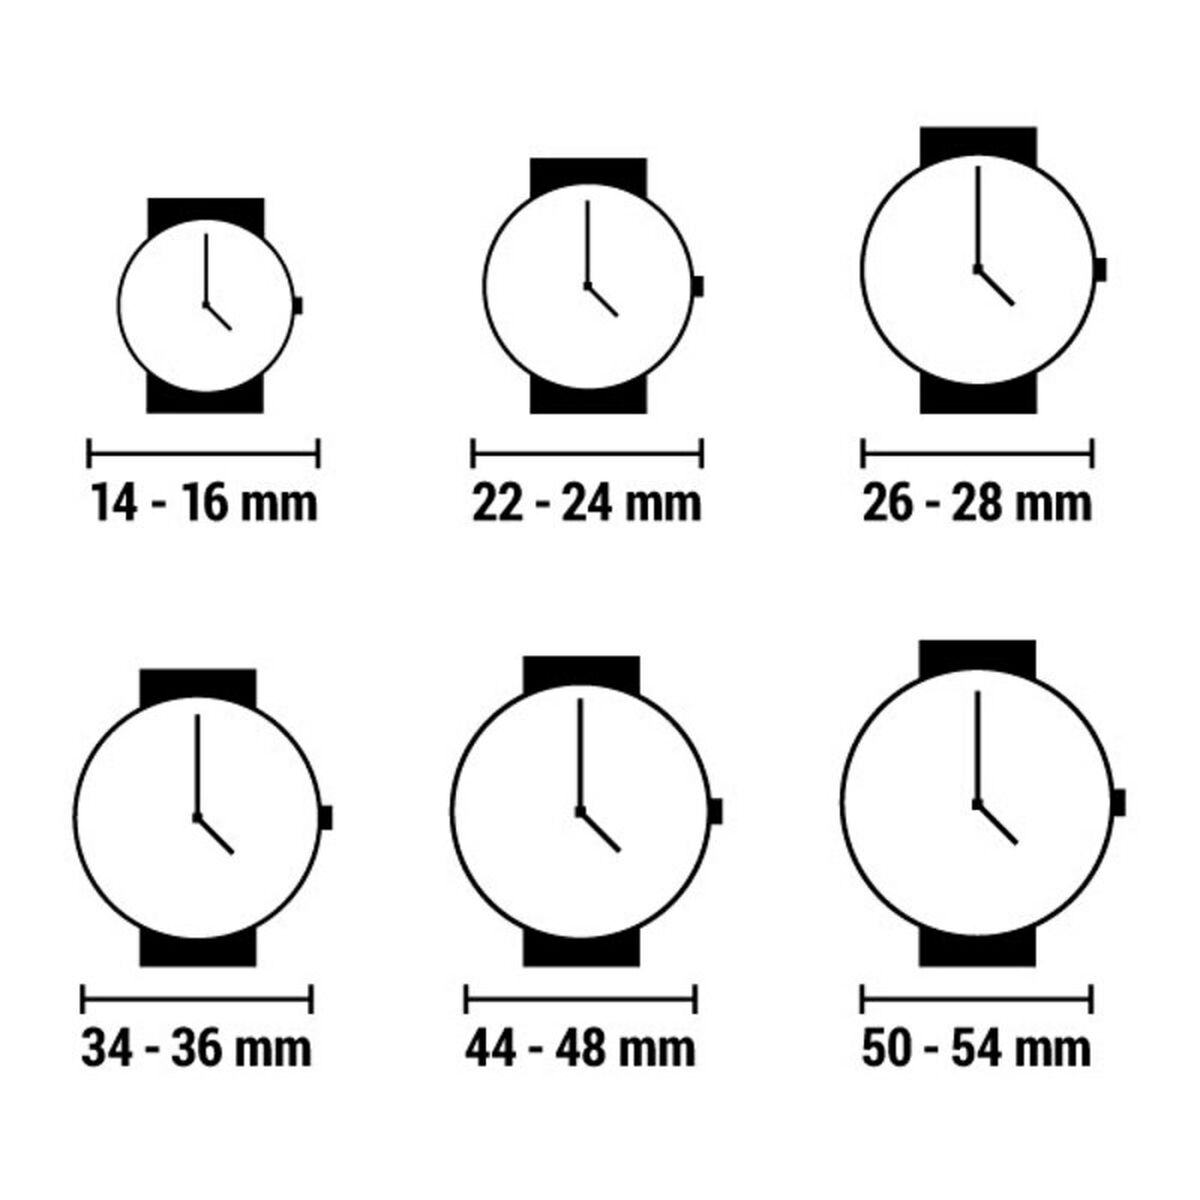 Horloge Heren Watx & Colors REWA1921 (Ø 40 mm)